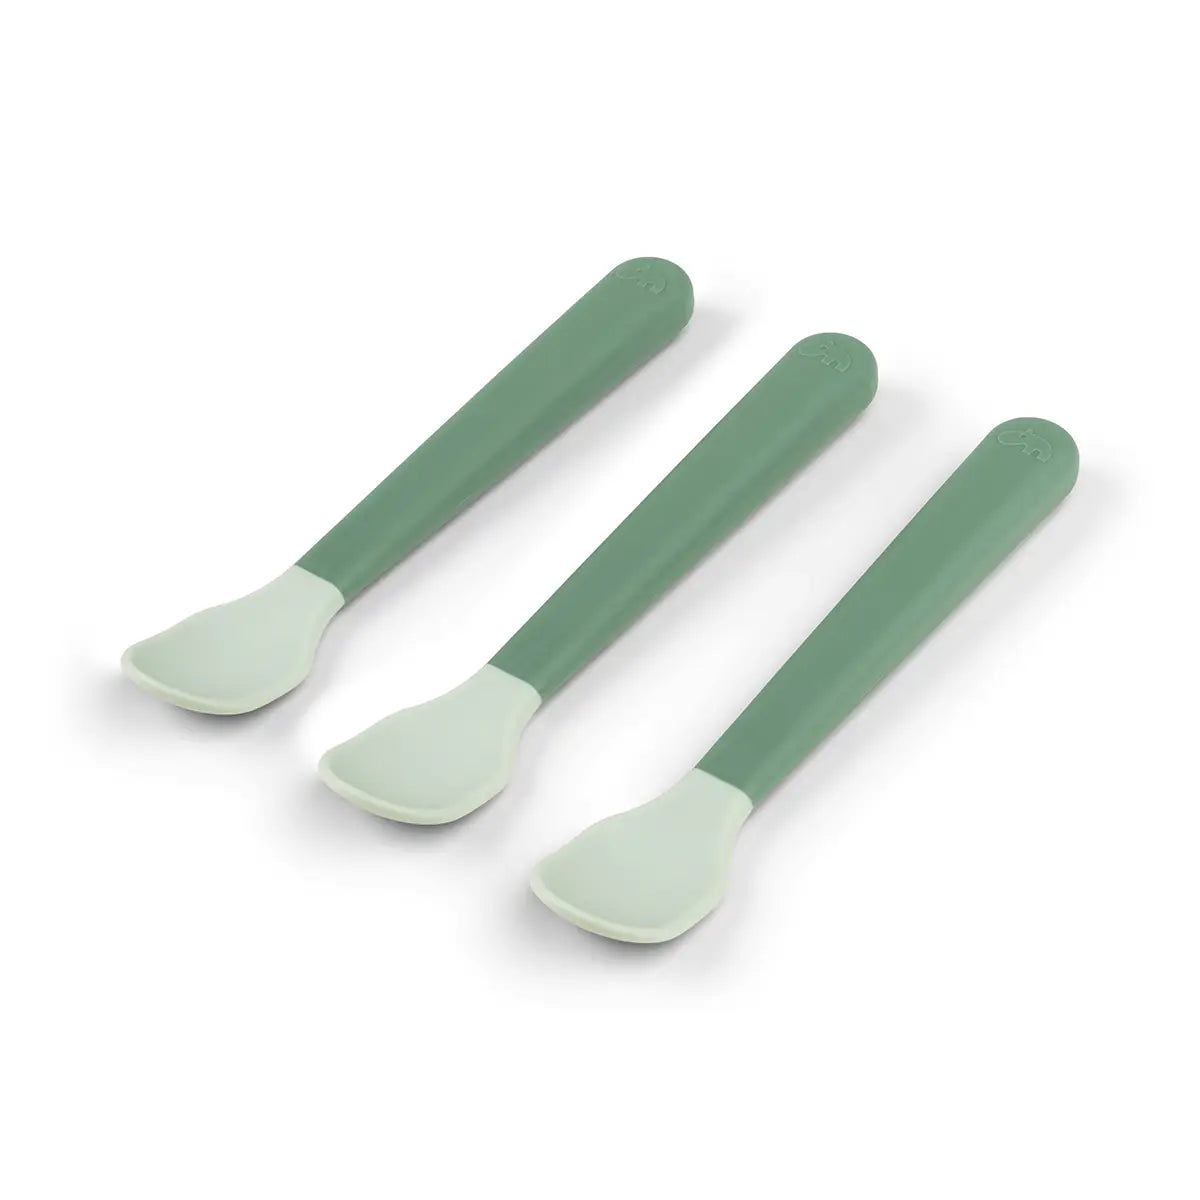 Foodie easy-grip baby spoon 3-pack - Green